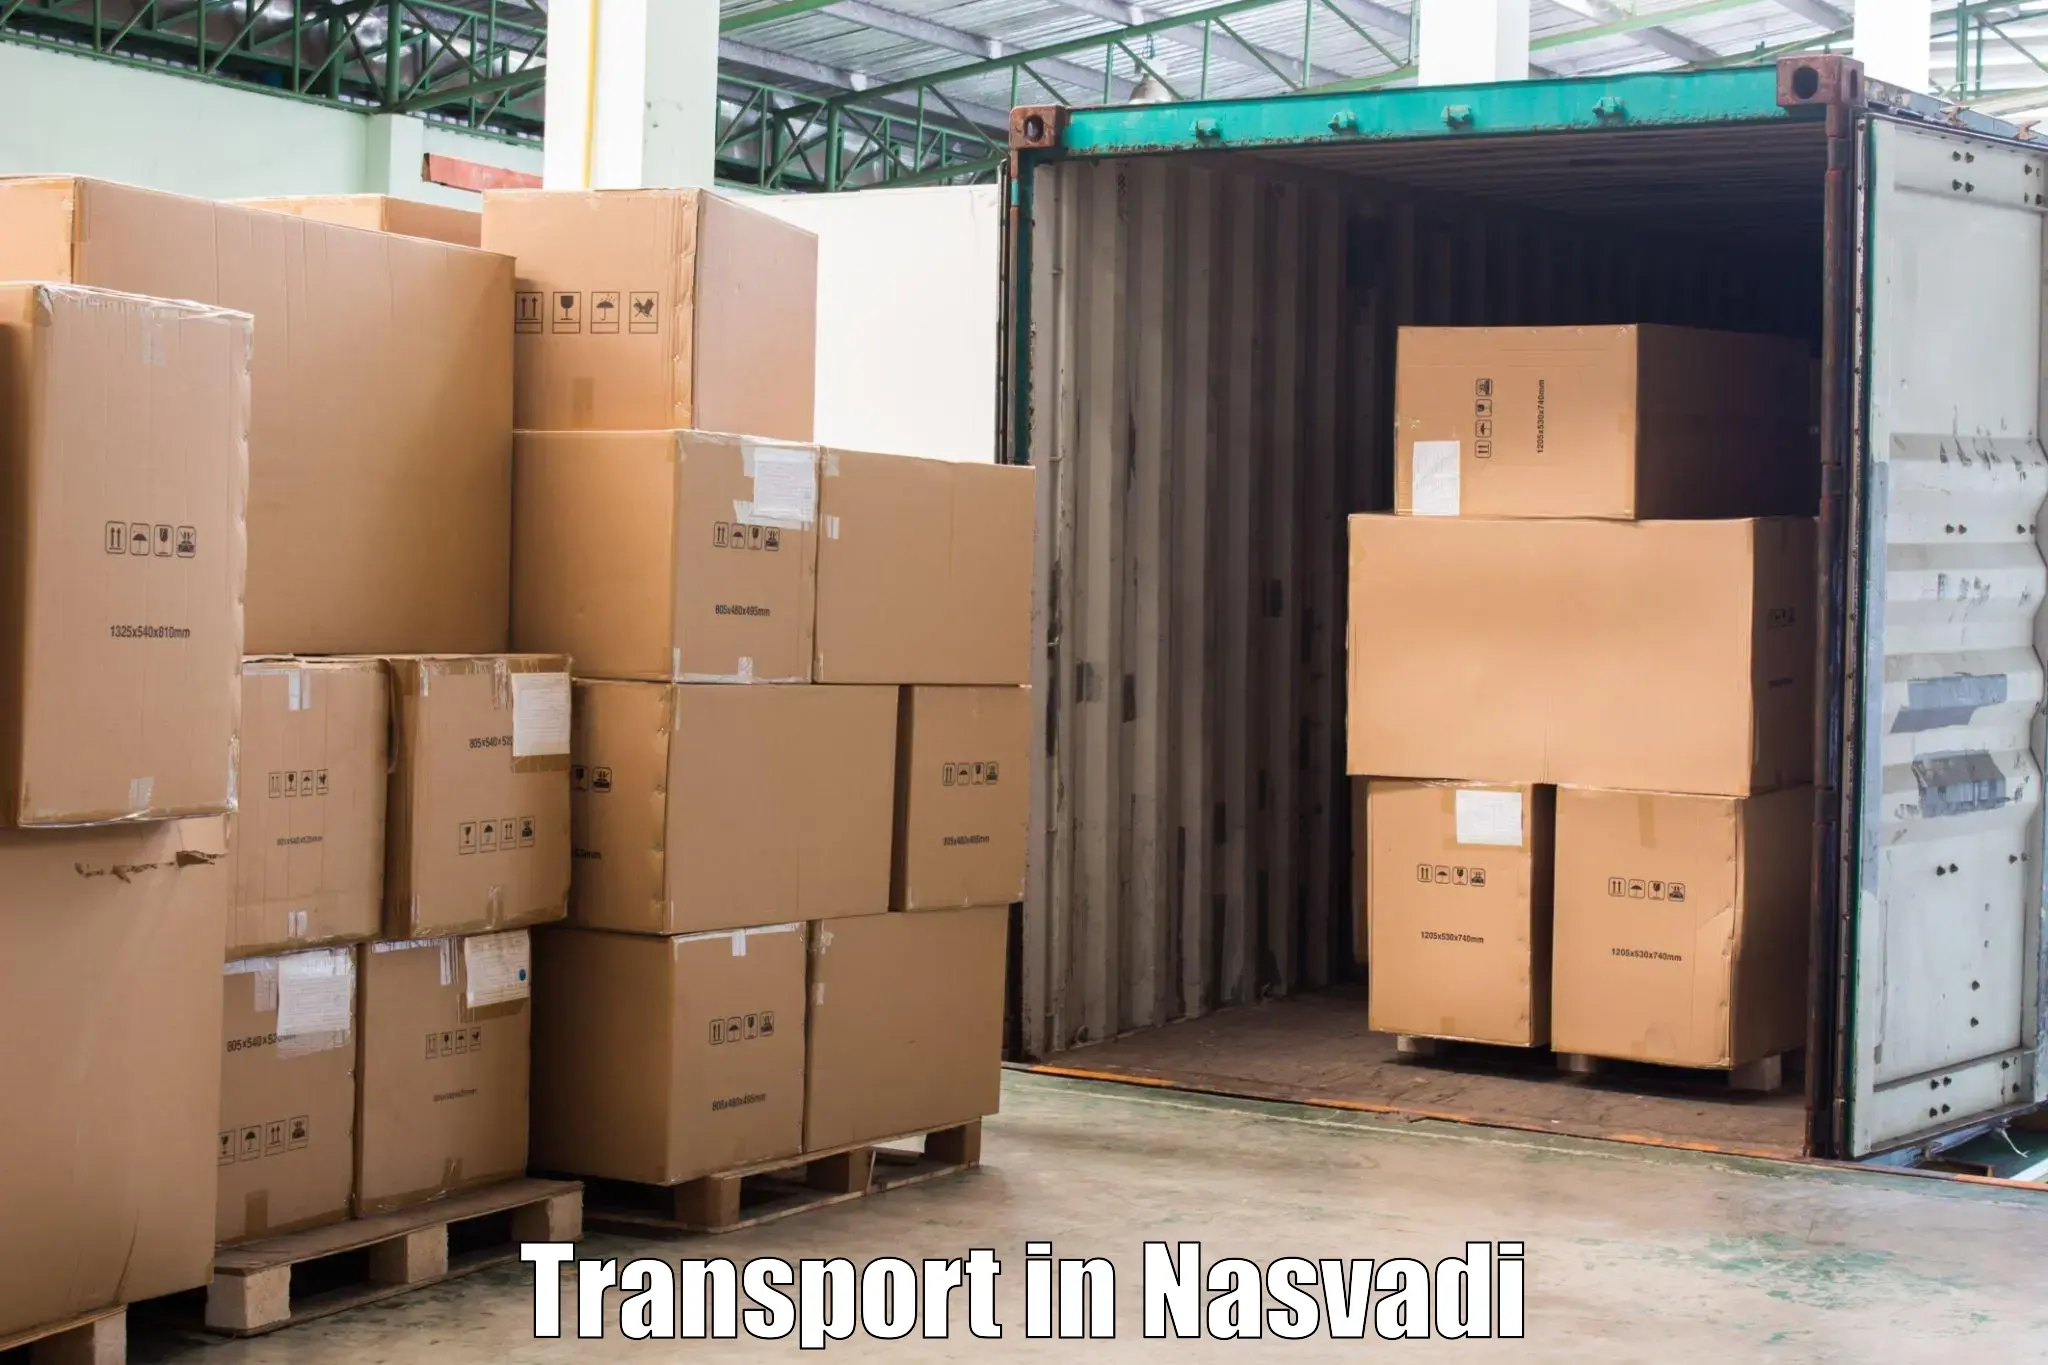 Delivery service in Nasvadi